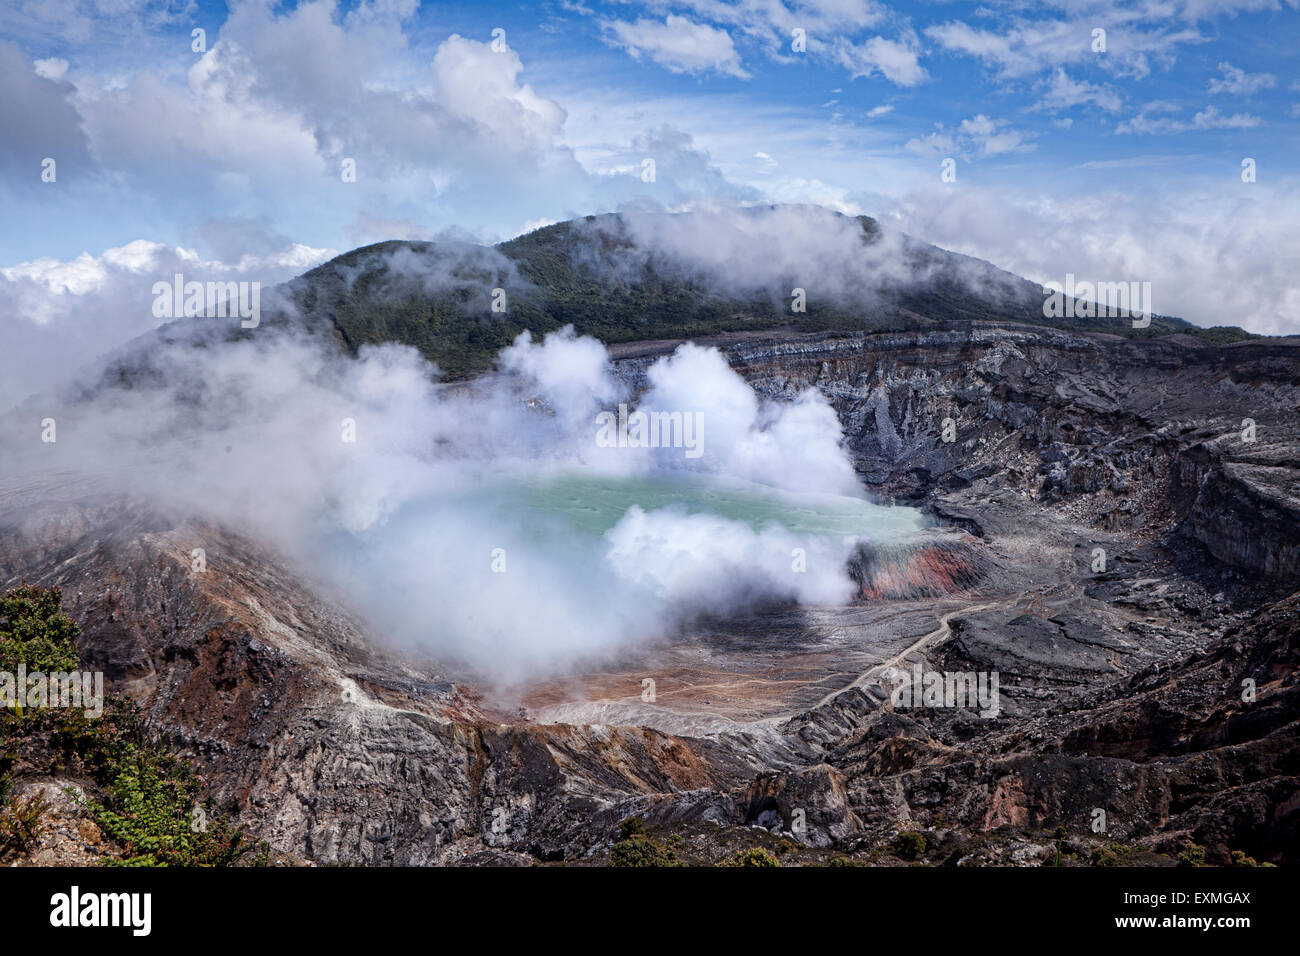 Poas Volcano in Costa Rica, Central America Stock Photo